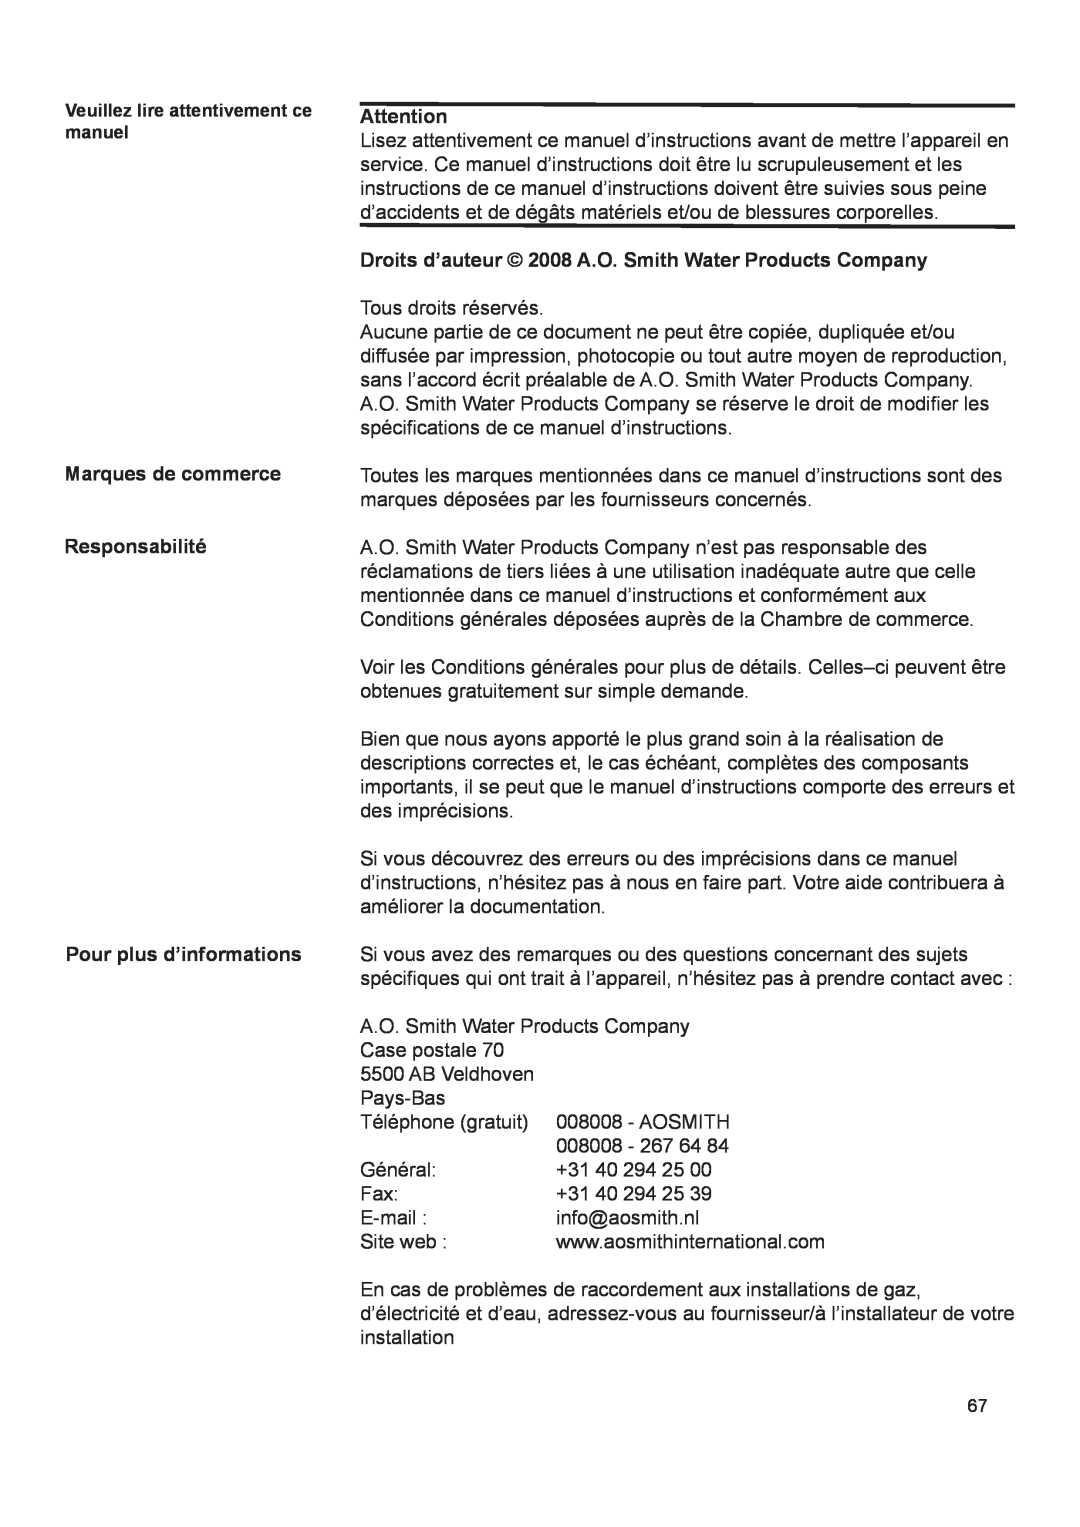 A.O. Smith 290 service manual Marques de commerce Responsabilité, Pour plus d’informations 